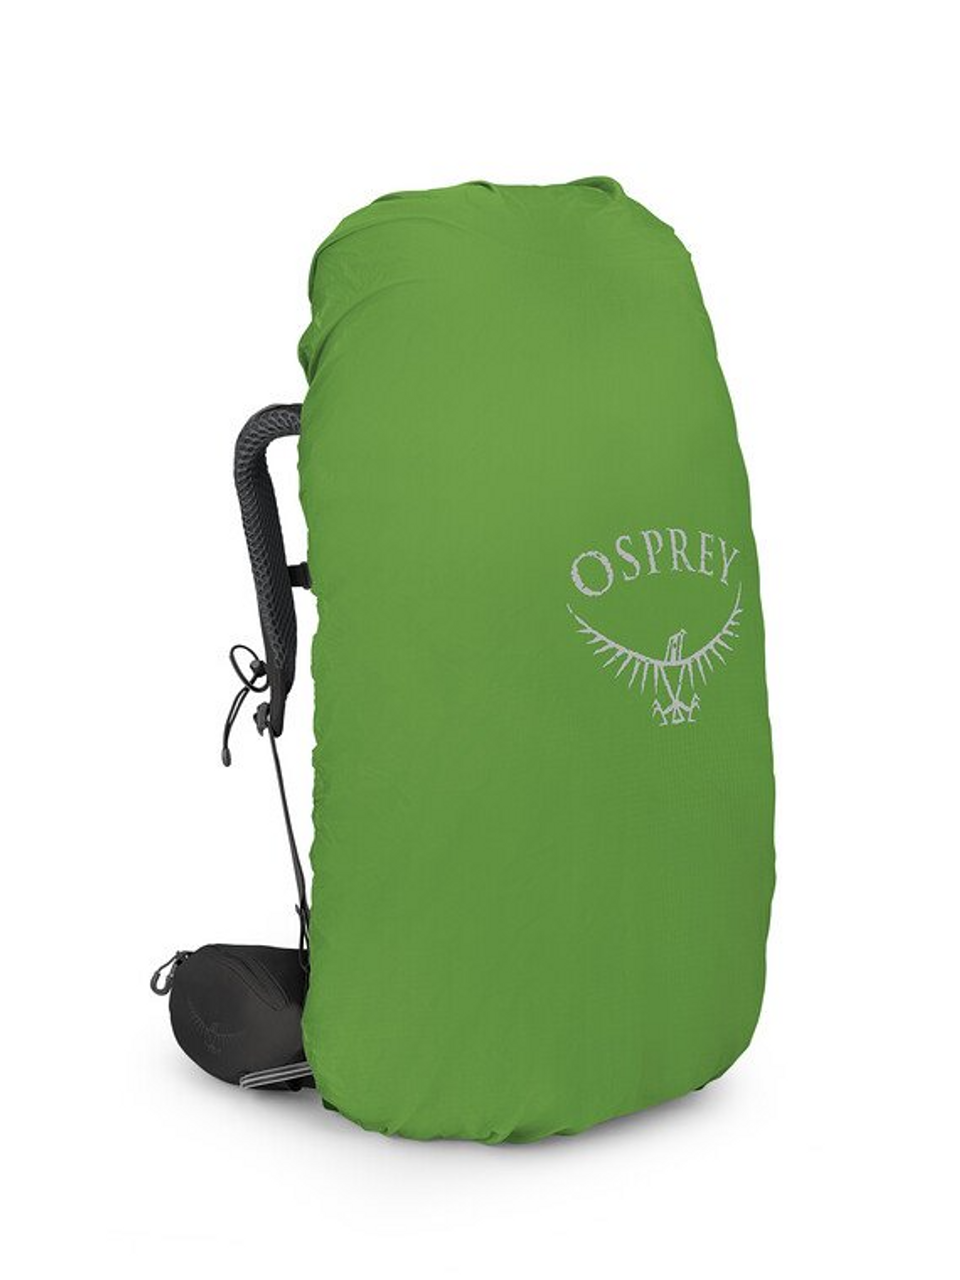 Kestrel Black Make Up Travel Bag | Bags, Travel bag, Cosmetic bag